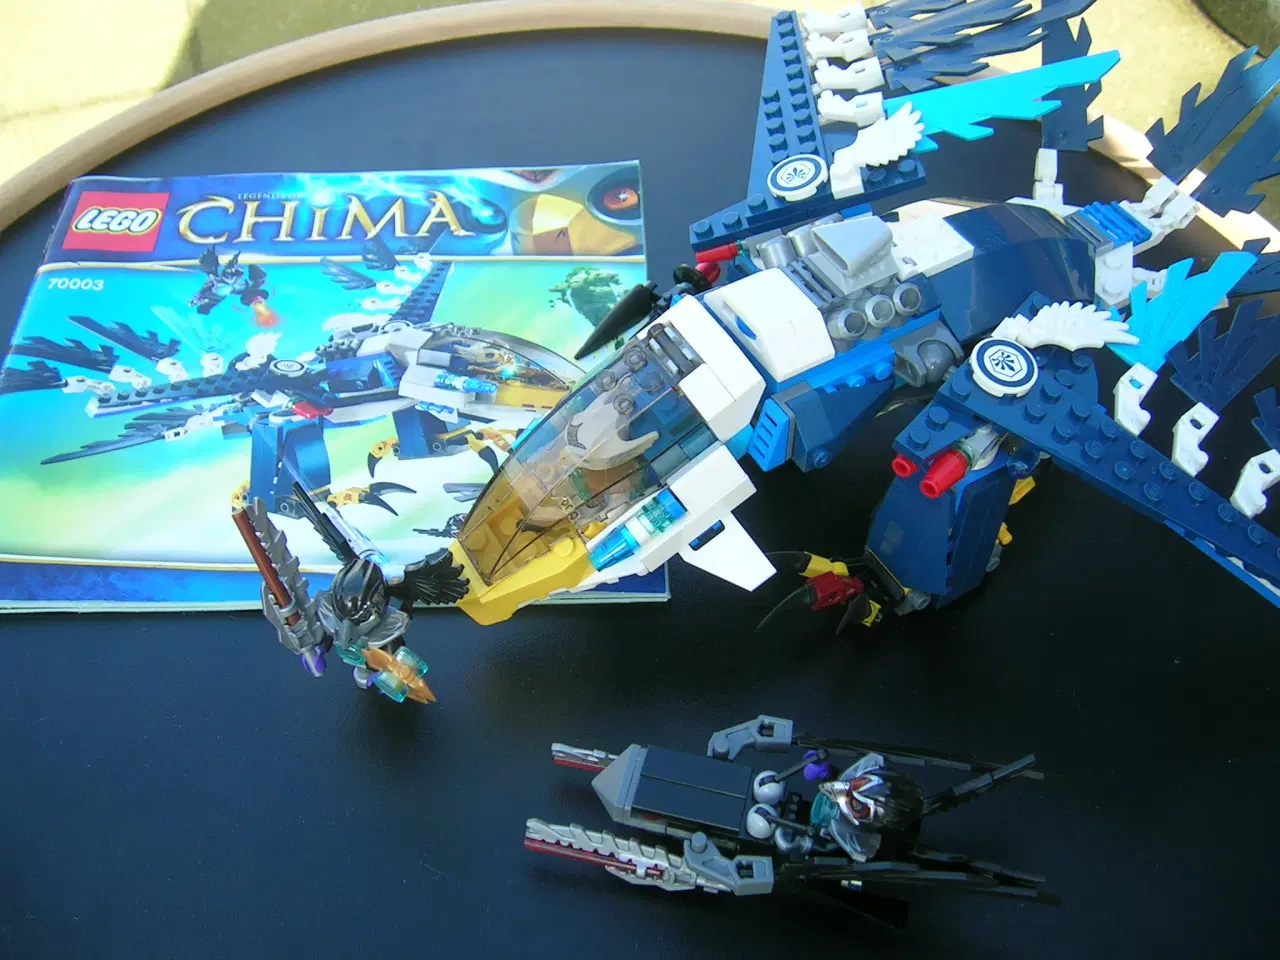 Billede 2 - Lego CHIMA 70003